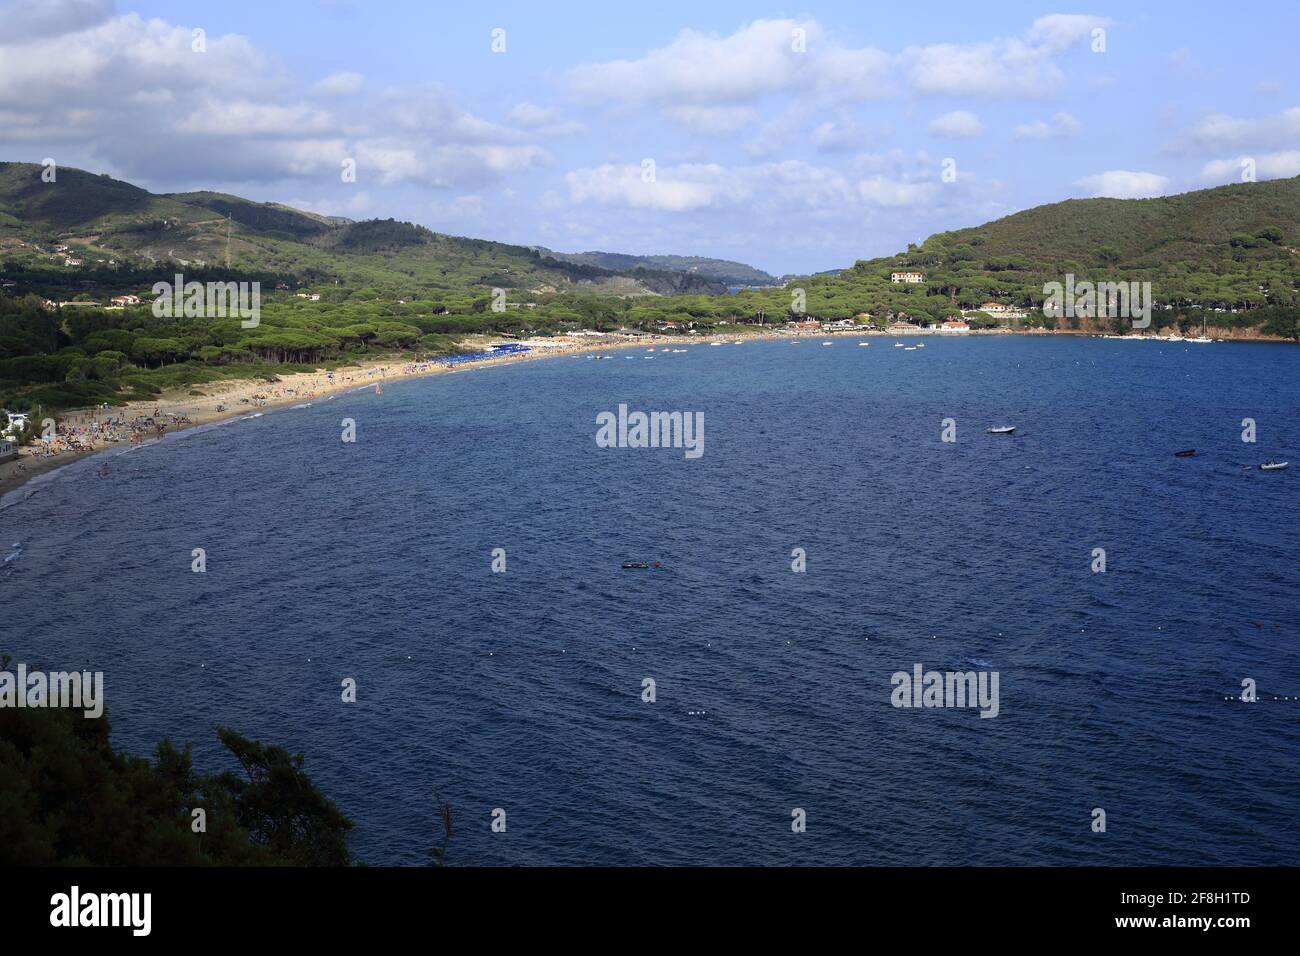 Panorama du golfe de Lacona, île d'Elbe, Italie Banque D'Images